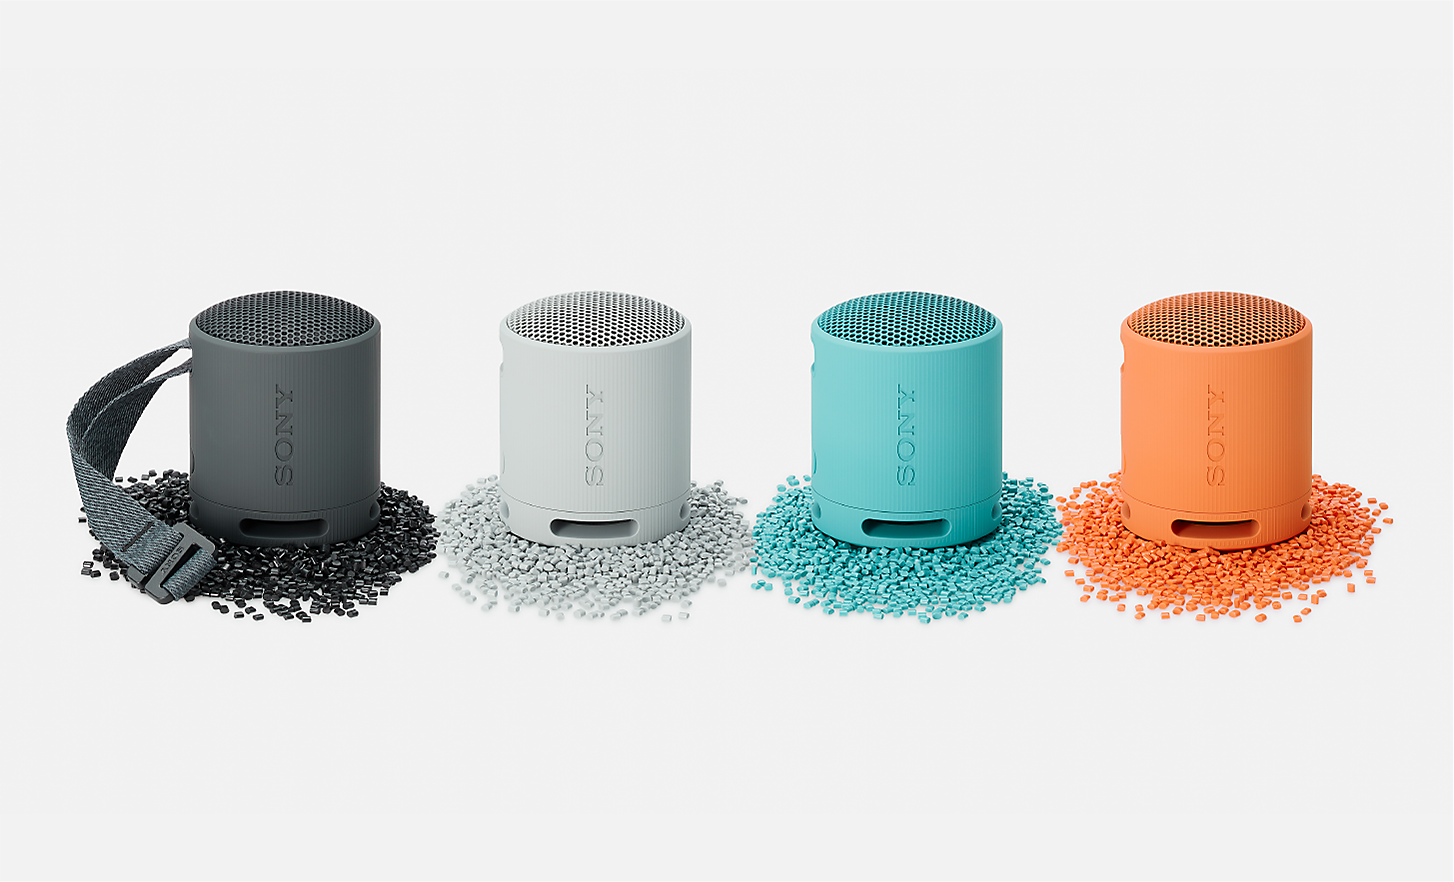 Gambar speaker SRS-XB100 berwarna hitam, putih, biru, dan oranye yang diletakkan di atas butiran plastik berwarna senada